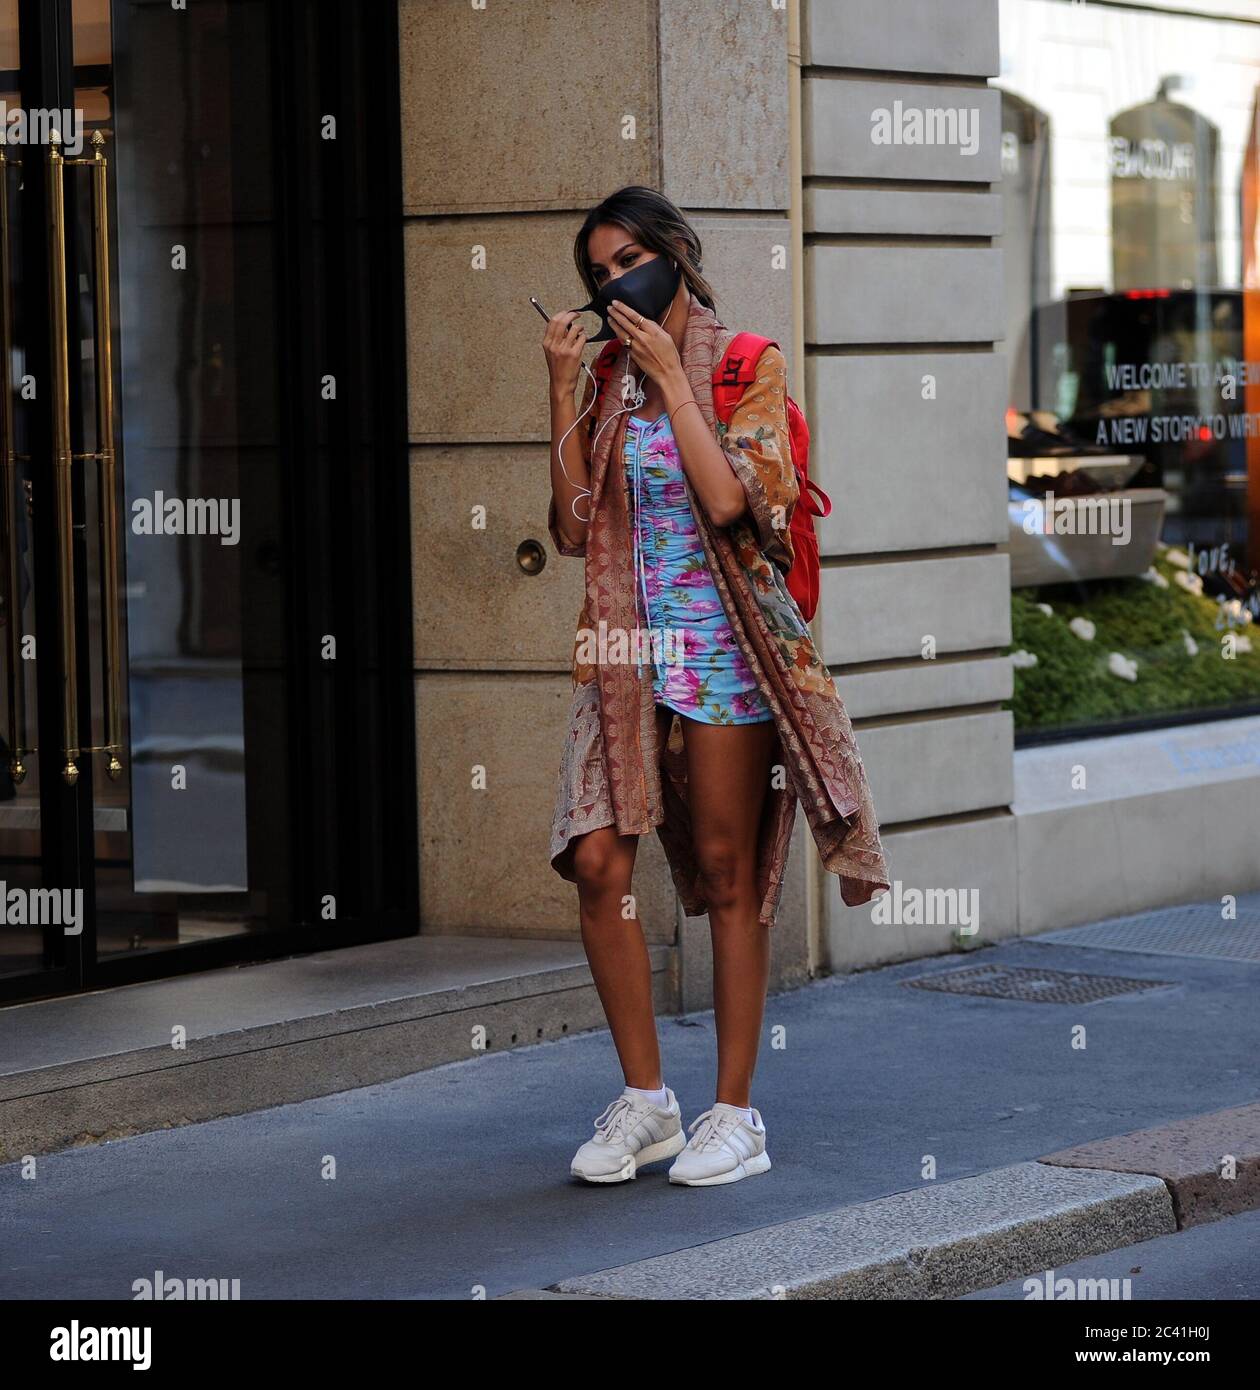 Milano, Madalina Ghenea nel centro Madalina Ghenea, attrice e modella  rumena, la testimonianza del marchio di gioielli 'DAMIANI'. Qui è sorpresa  mentre cammina per le strade del centro in un pomeriggio caldo.